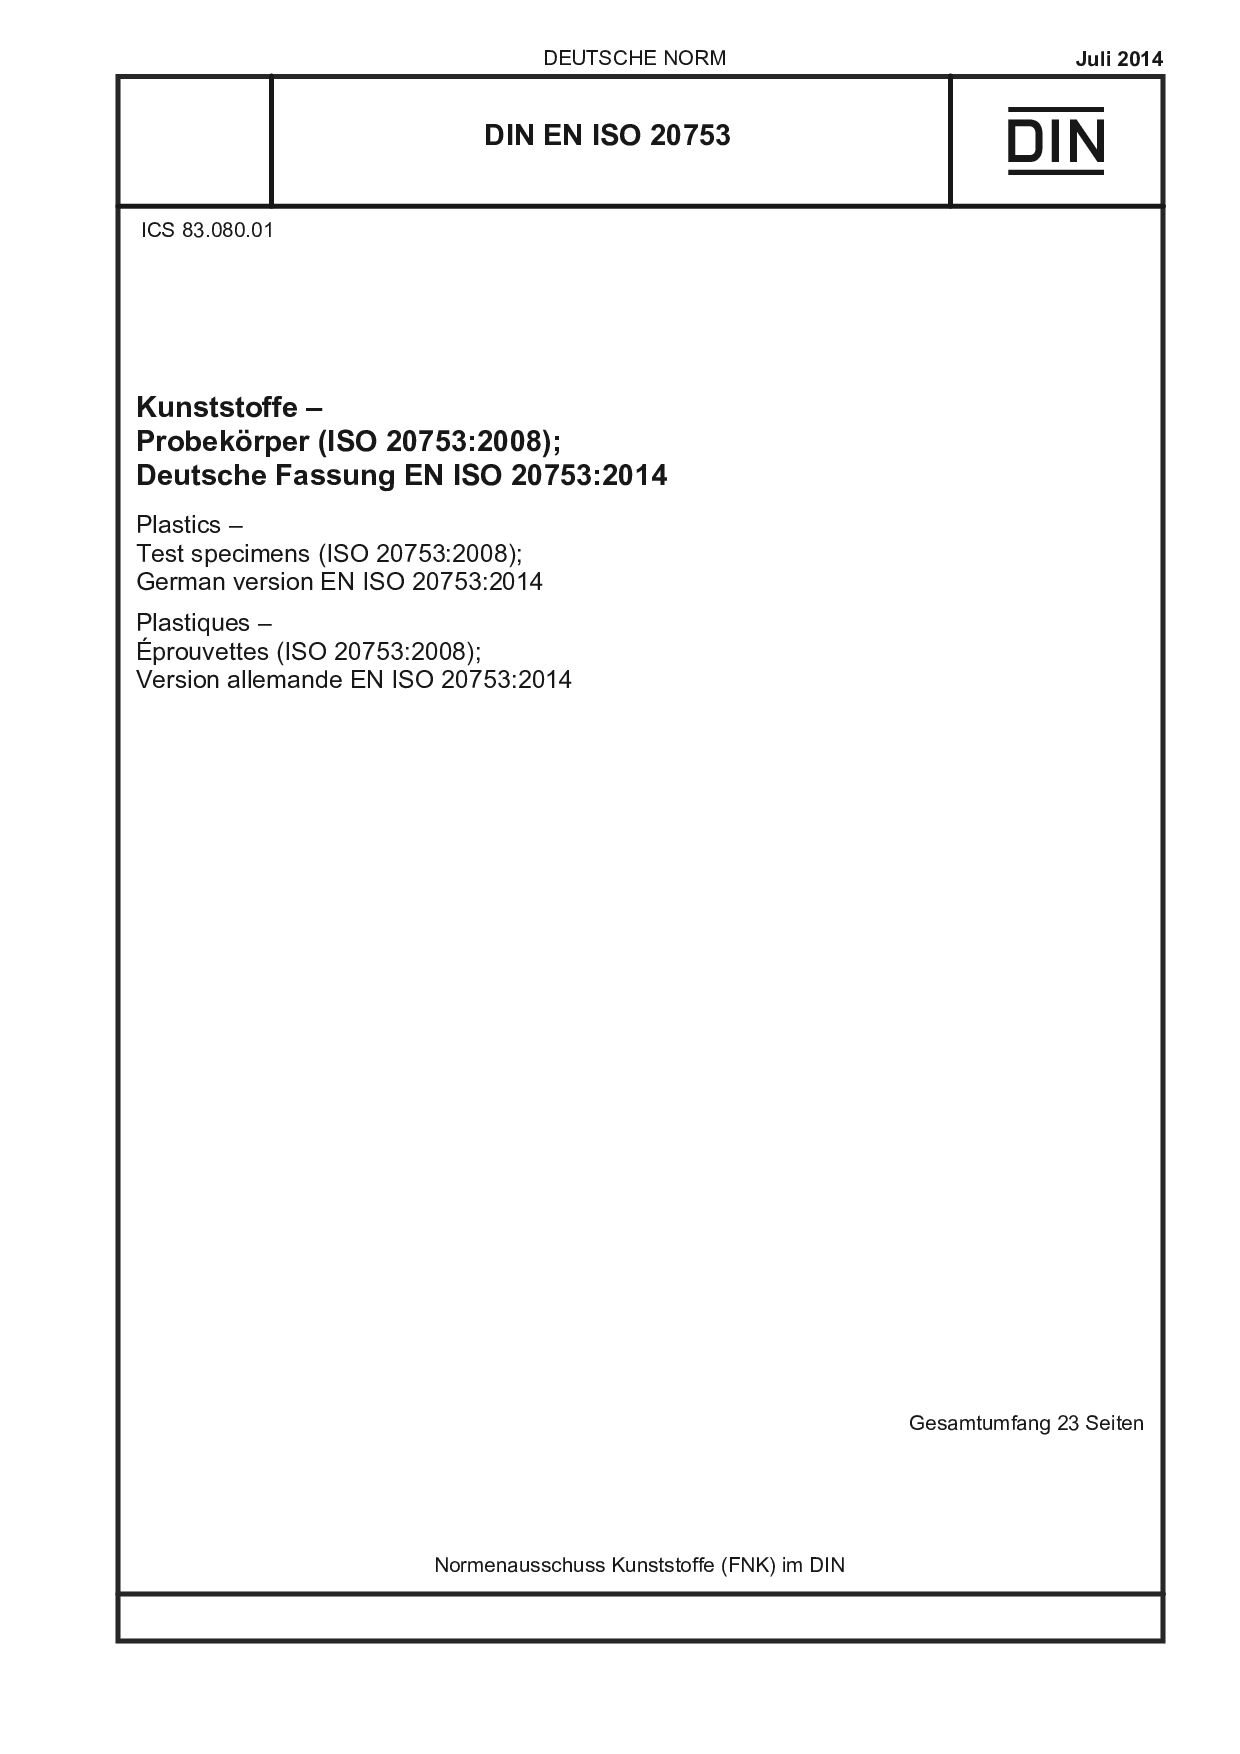 DIN EN ISO 20753:2014封面图